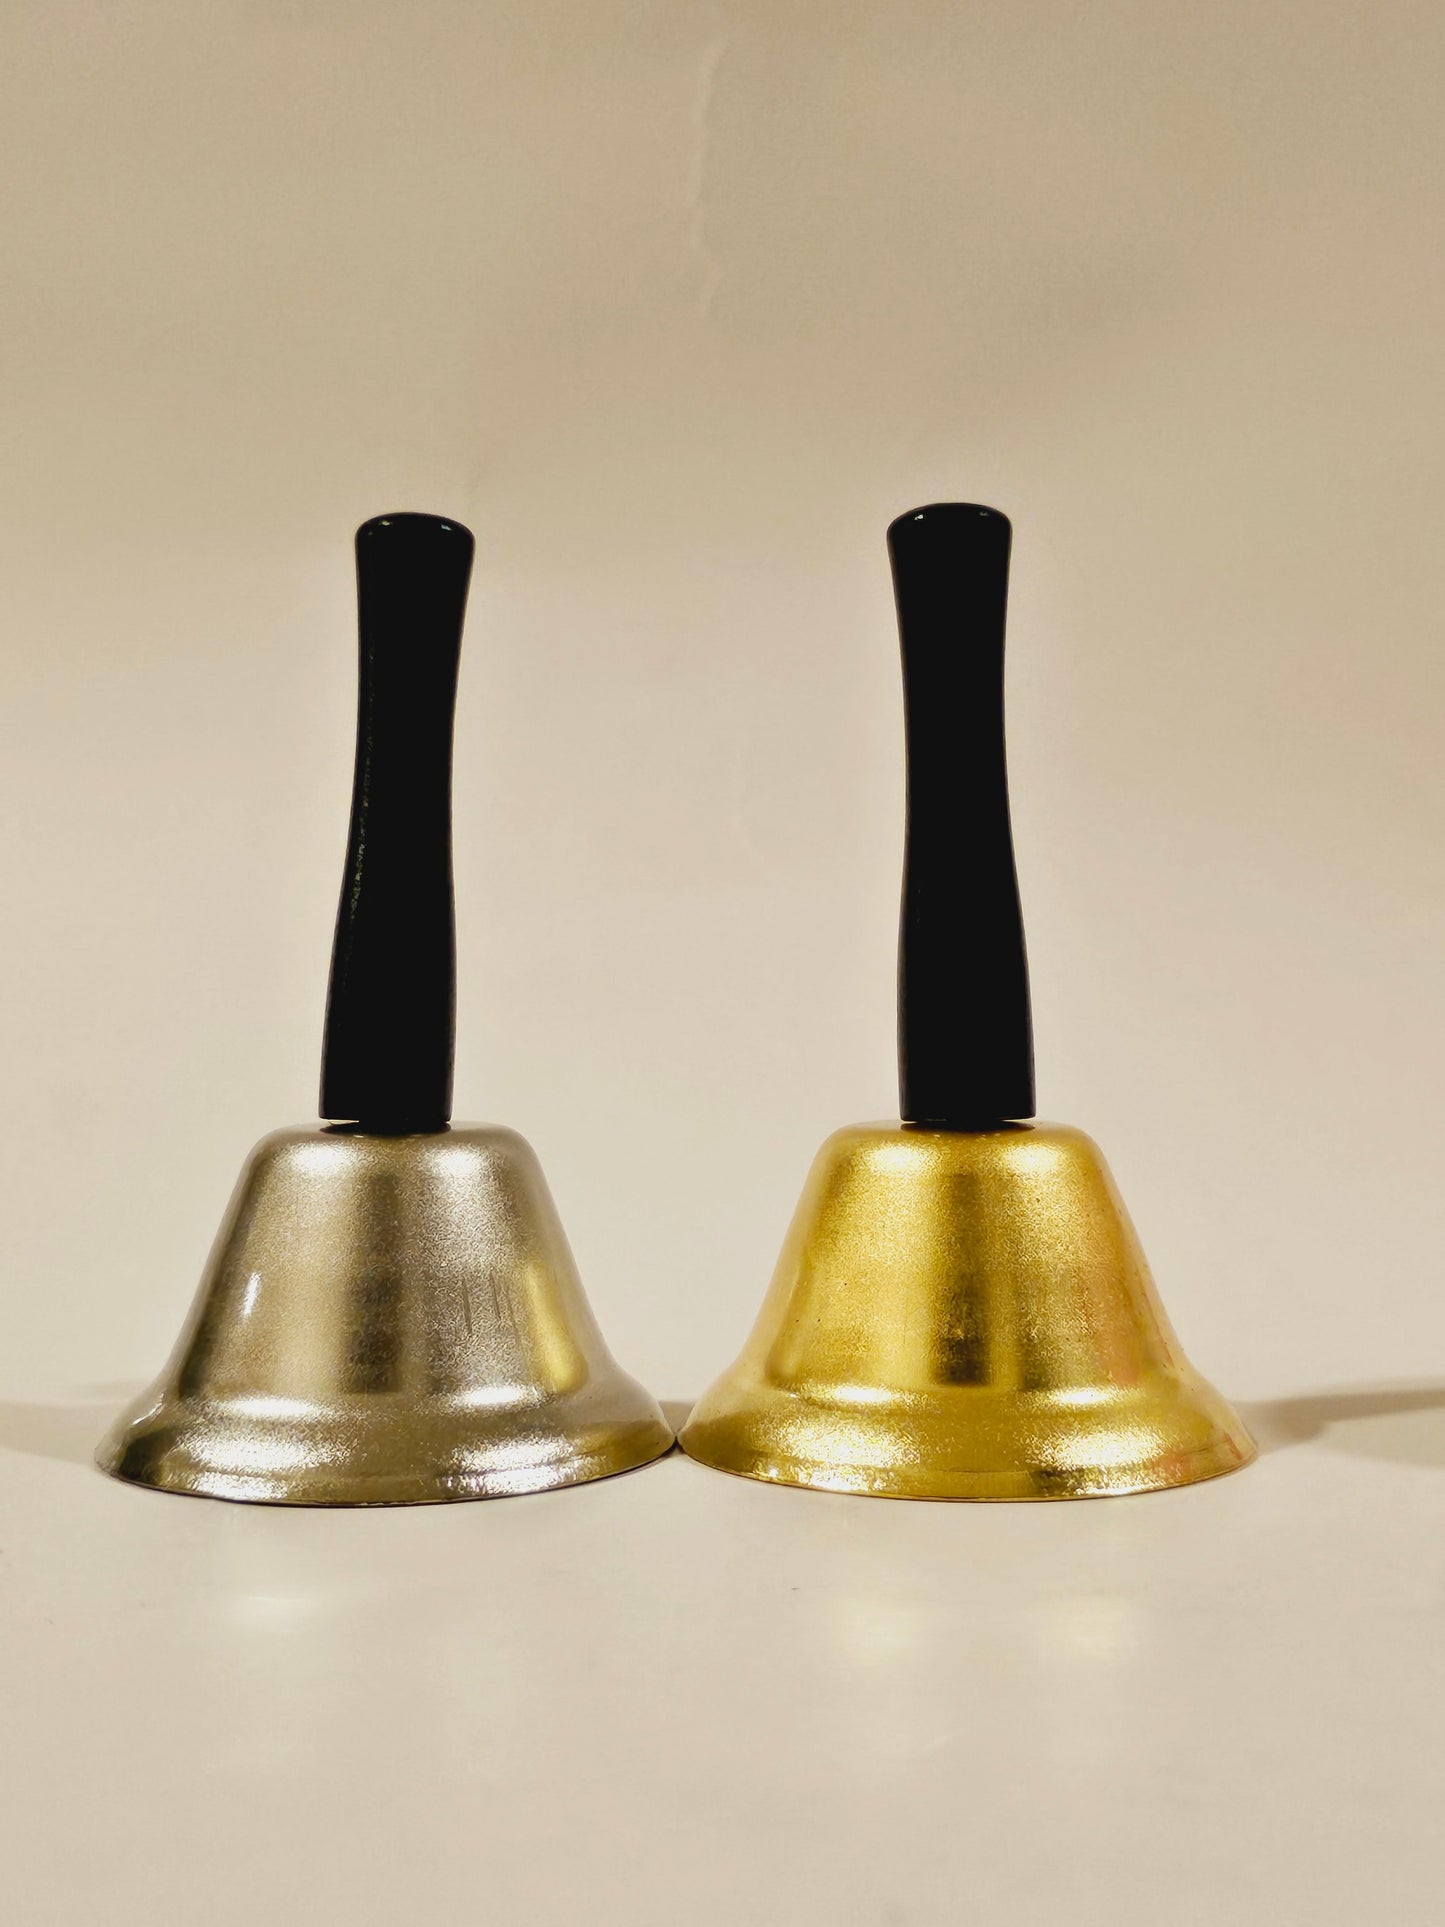 Brass Bell | Alter Bell